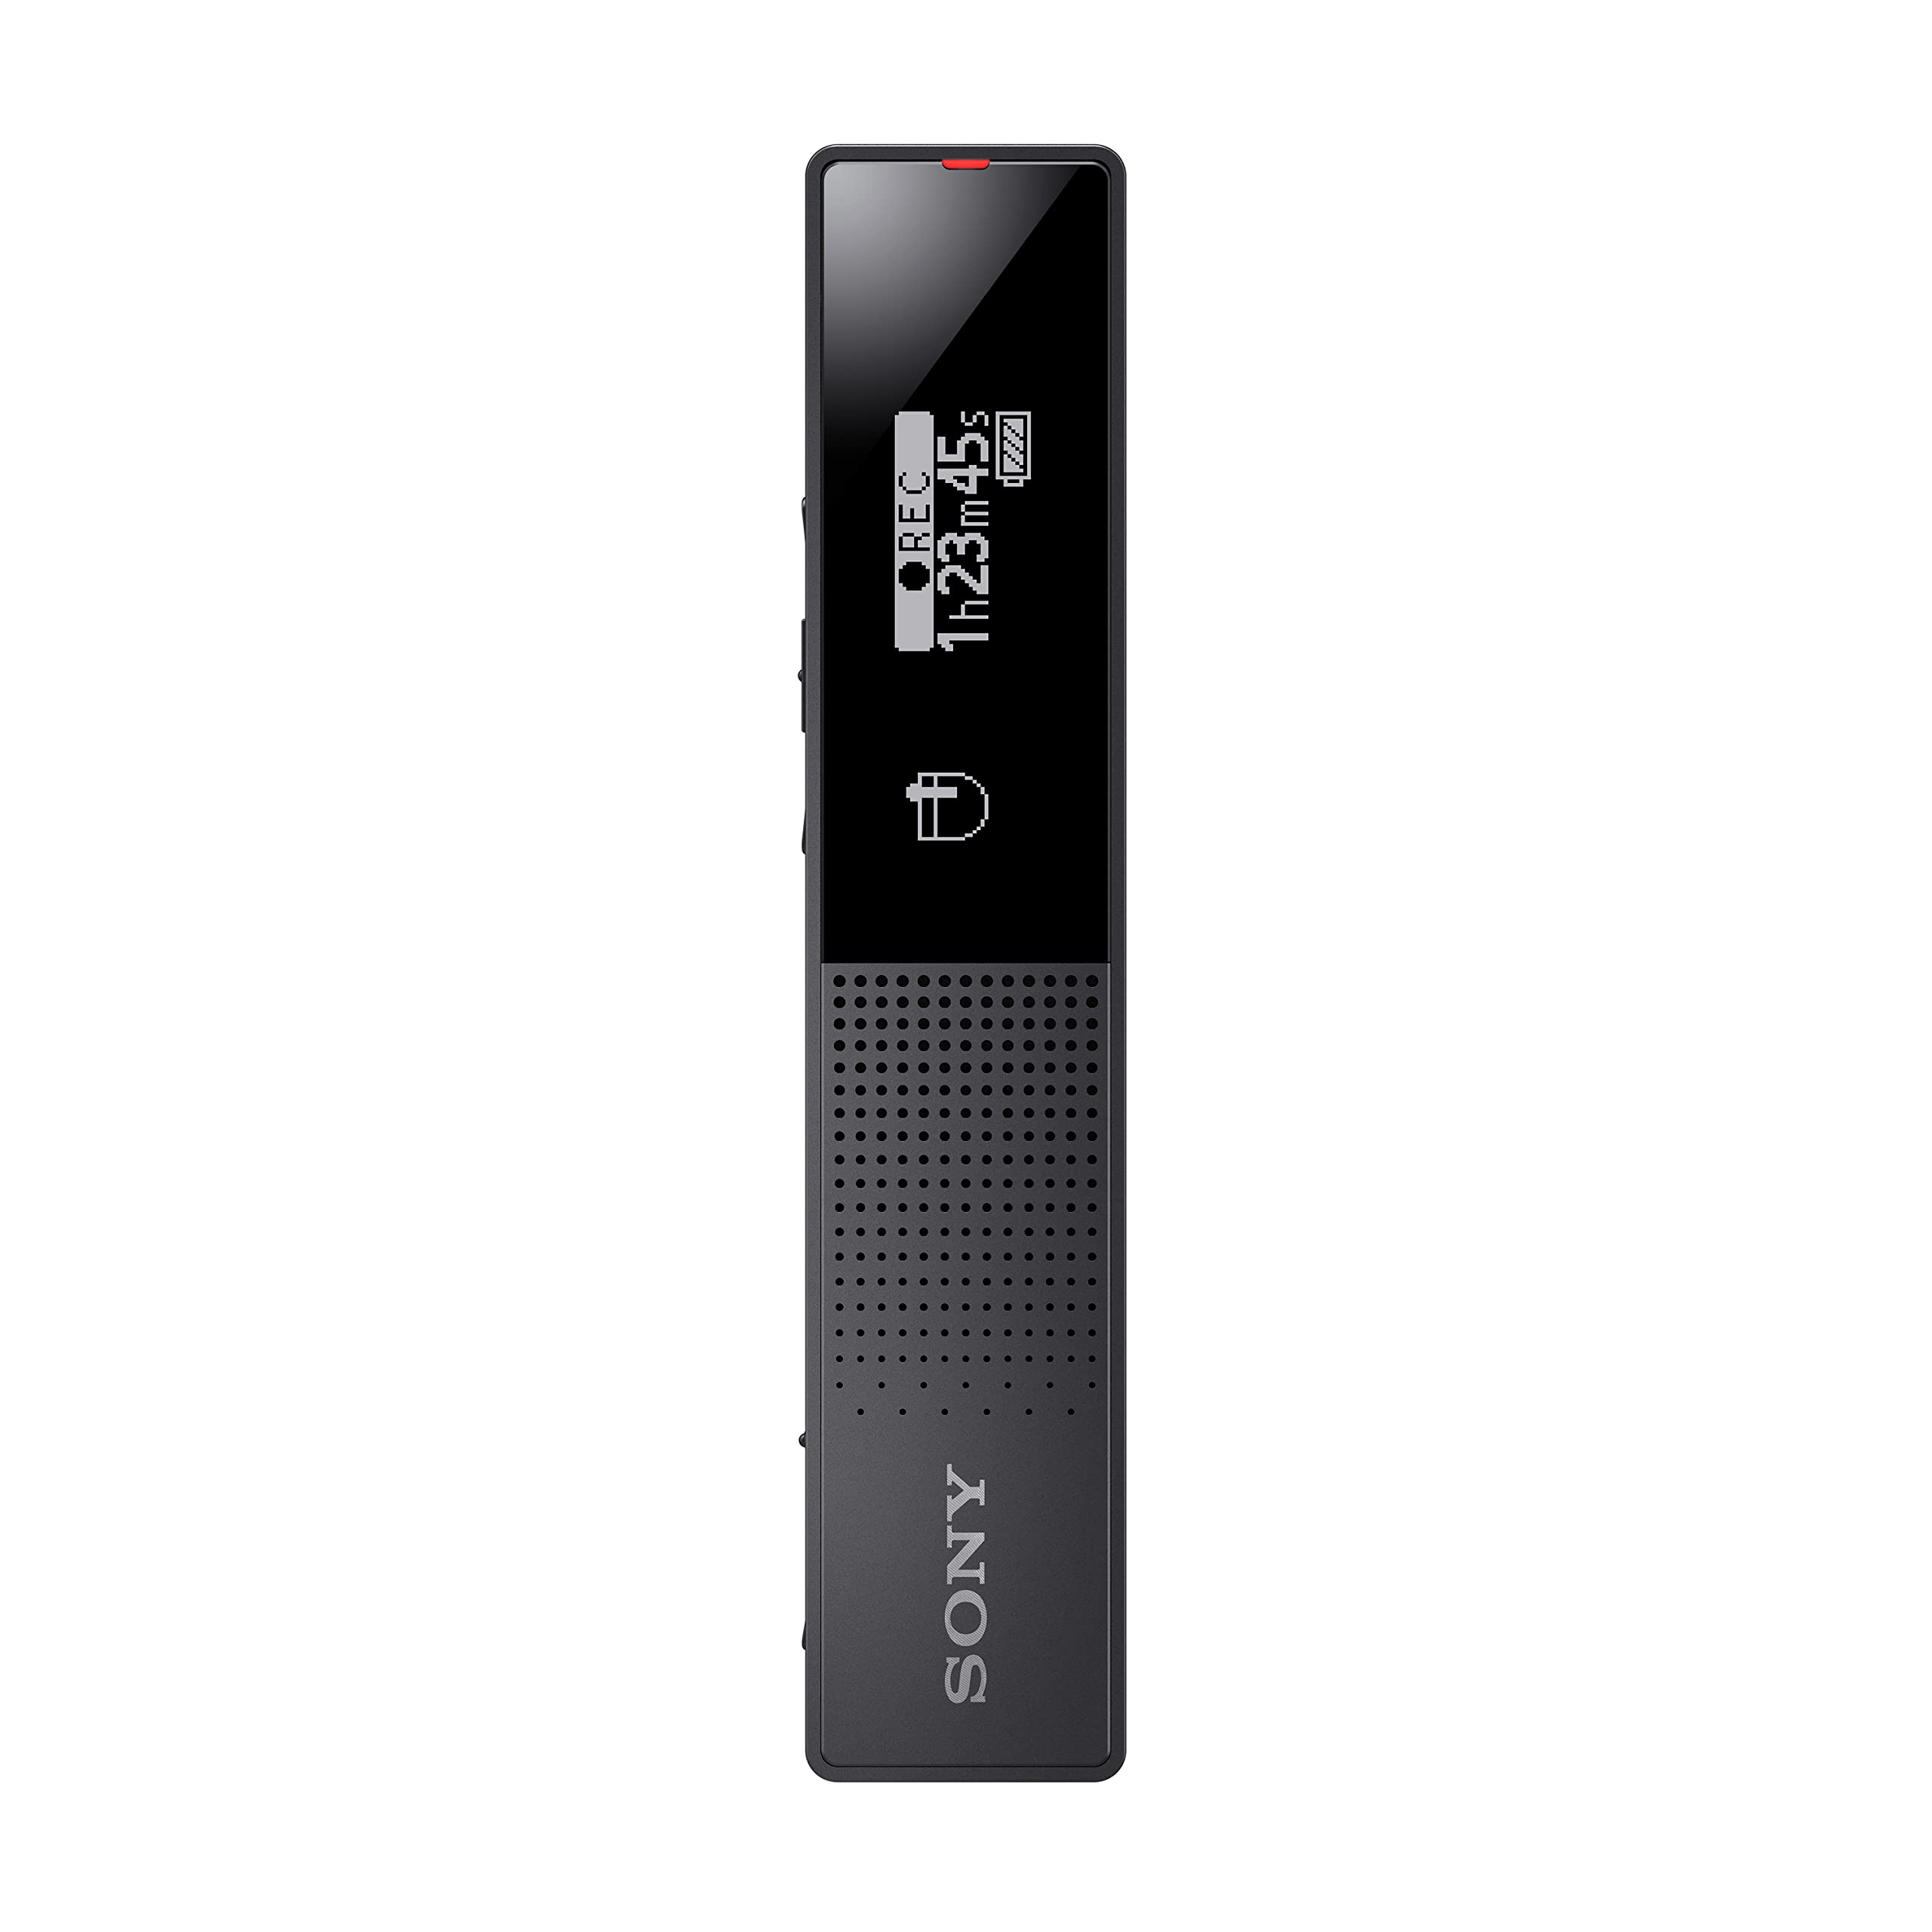 Sony ICD-TX660 - 带有 OLED 显示屏的超薄数字录音机...